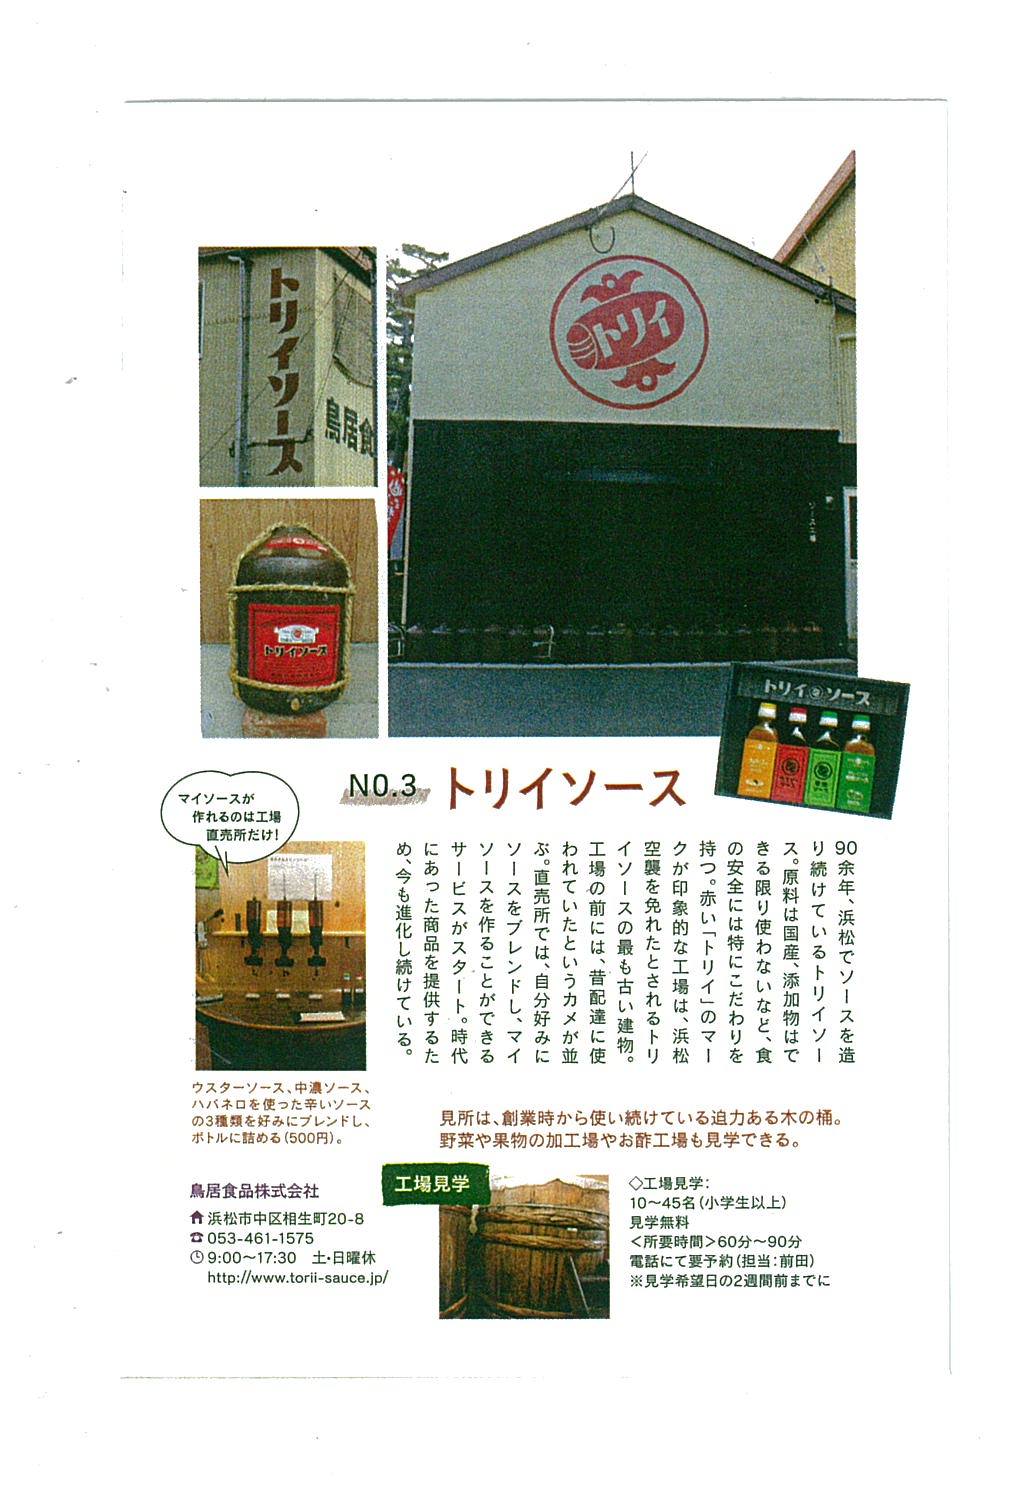 http://www.torii-sauce.jp/media/%E3%82%A6%E3%82%A3%E3%83%BC%E3%83%A9.jpg